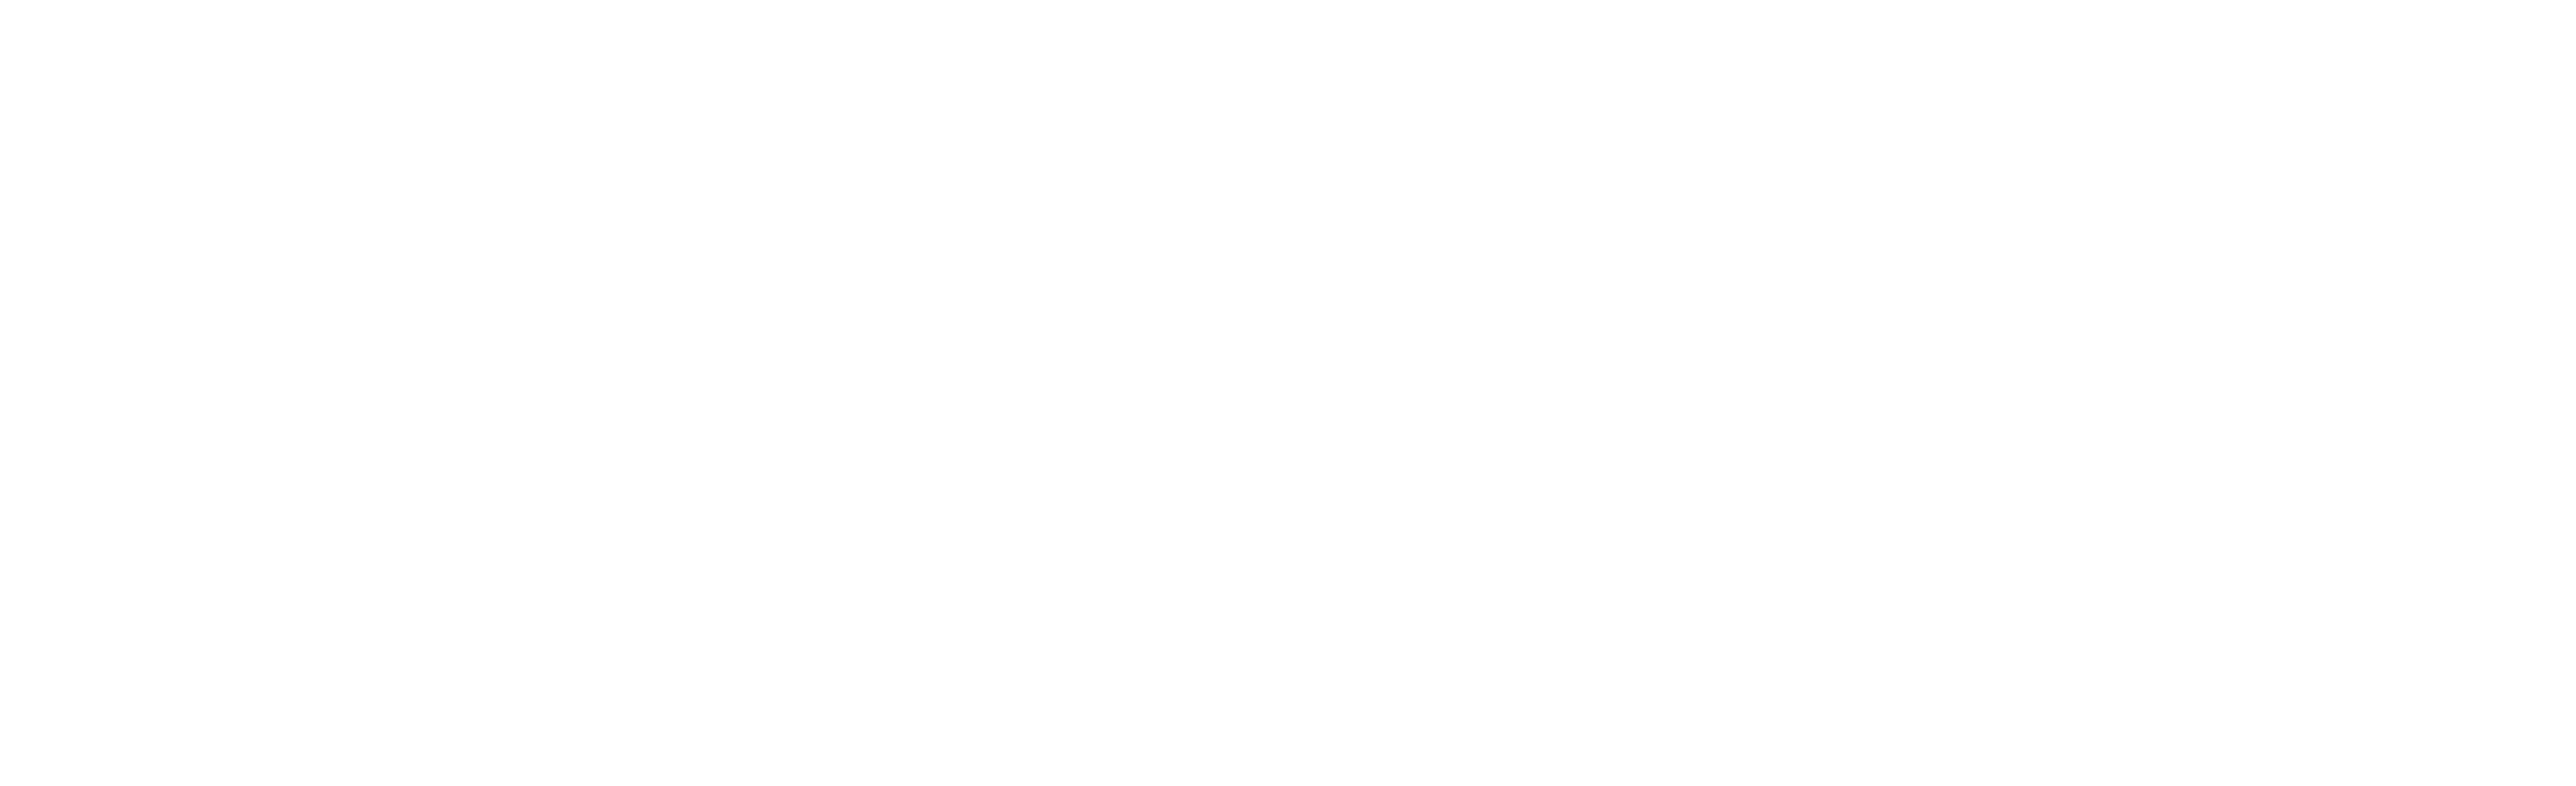 Apollo's True North